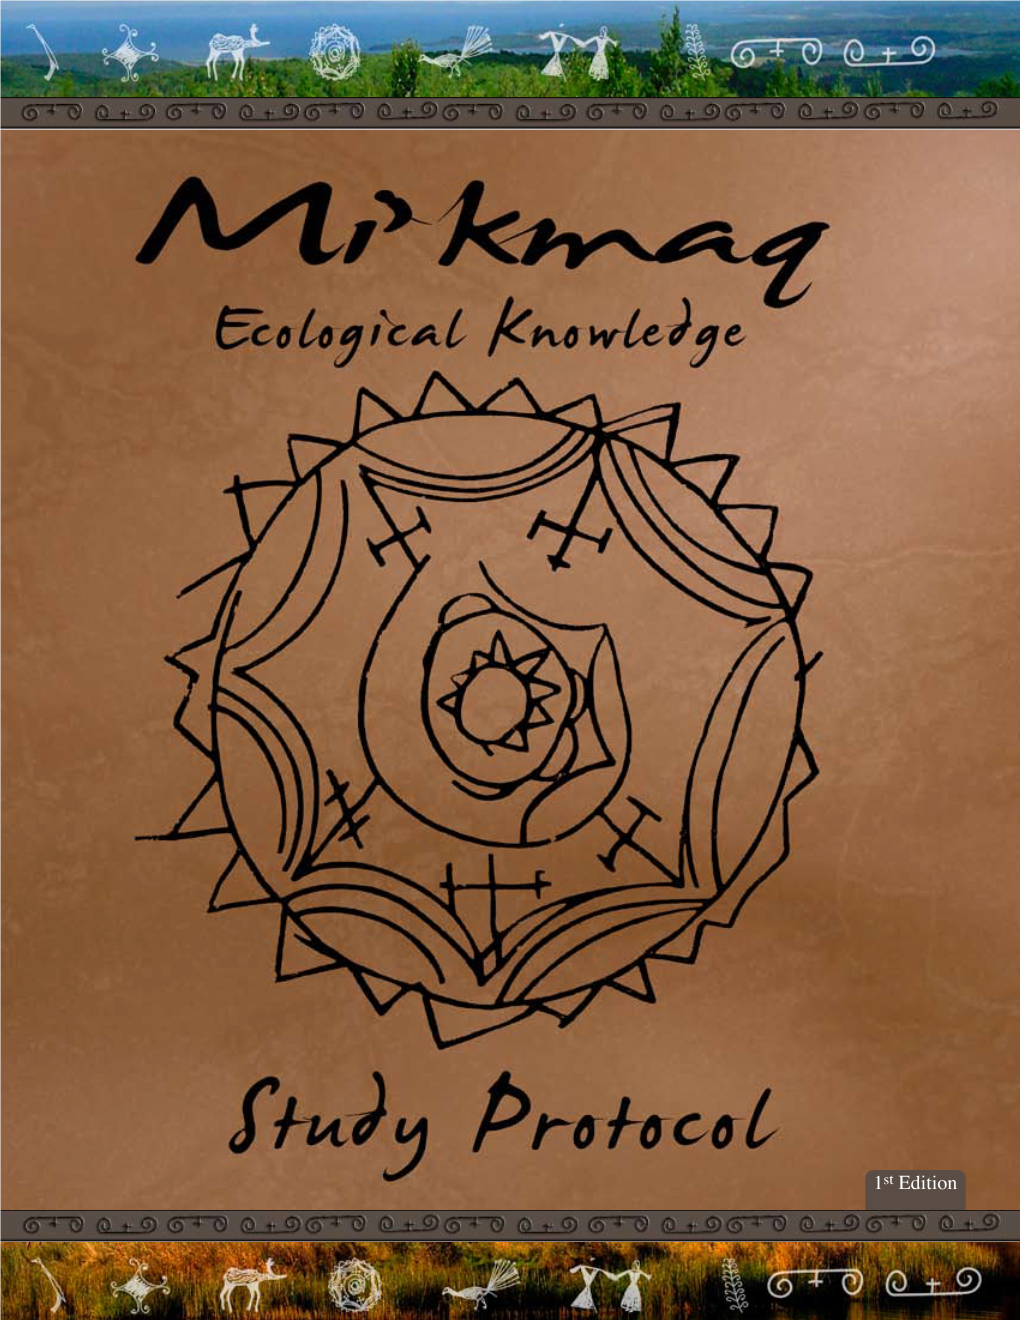 Mi'kmaq Ecological Knowledge Study Protocol